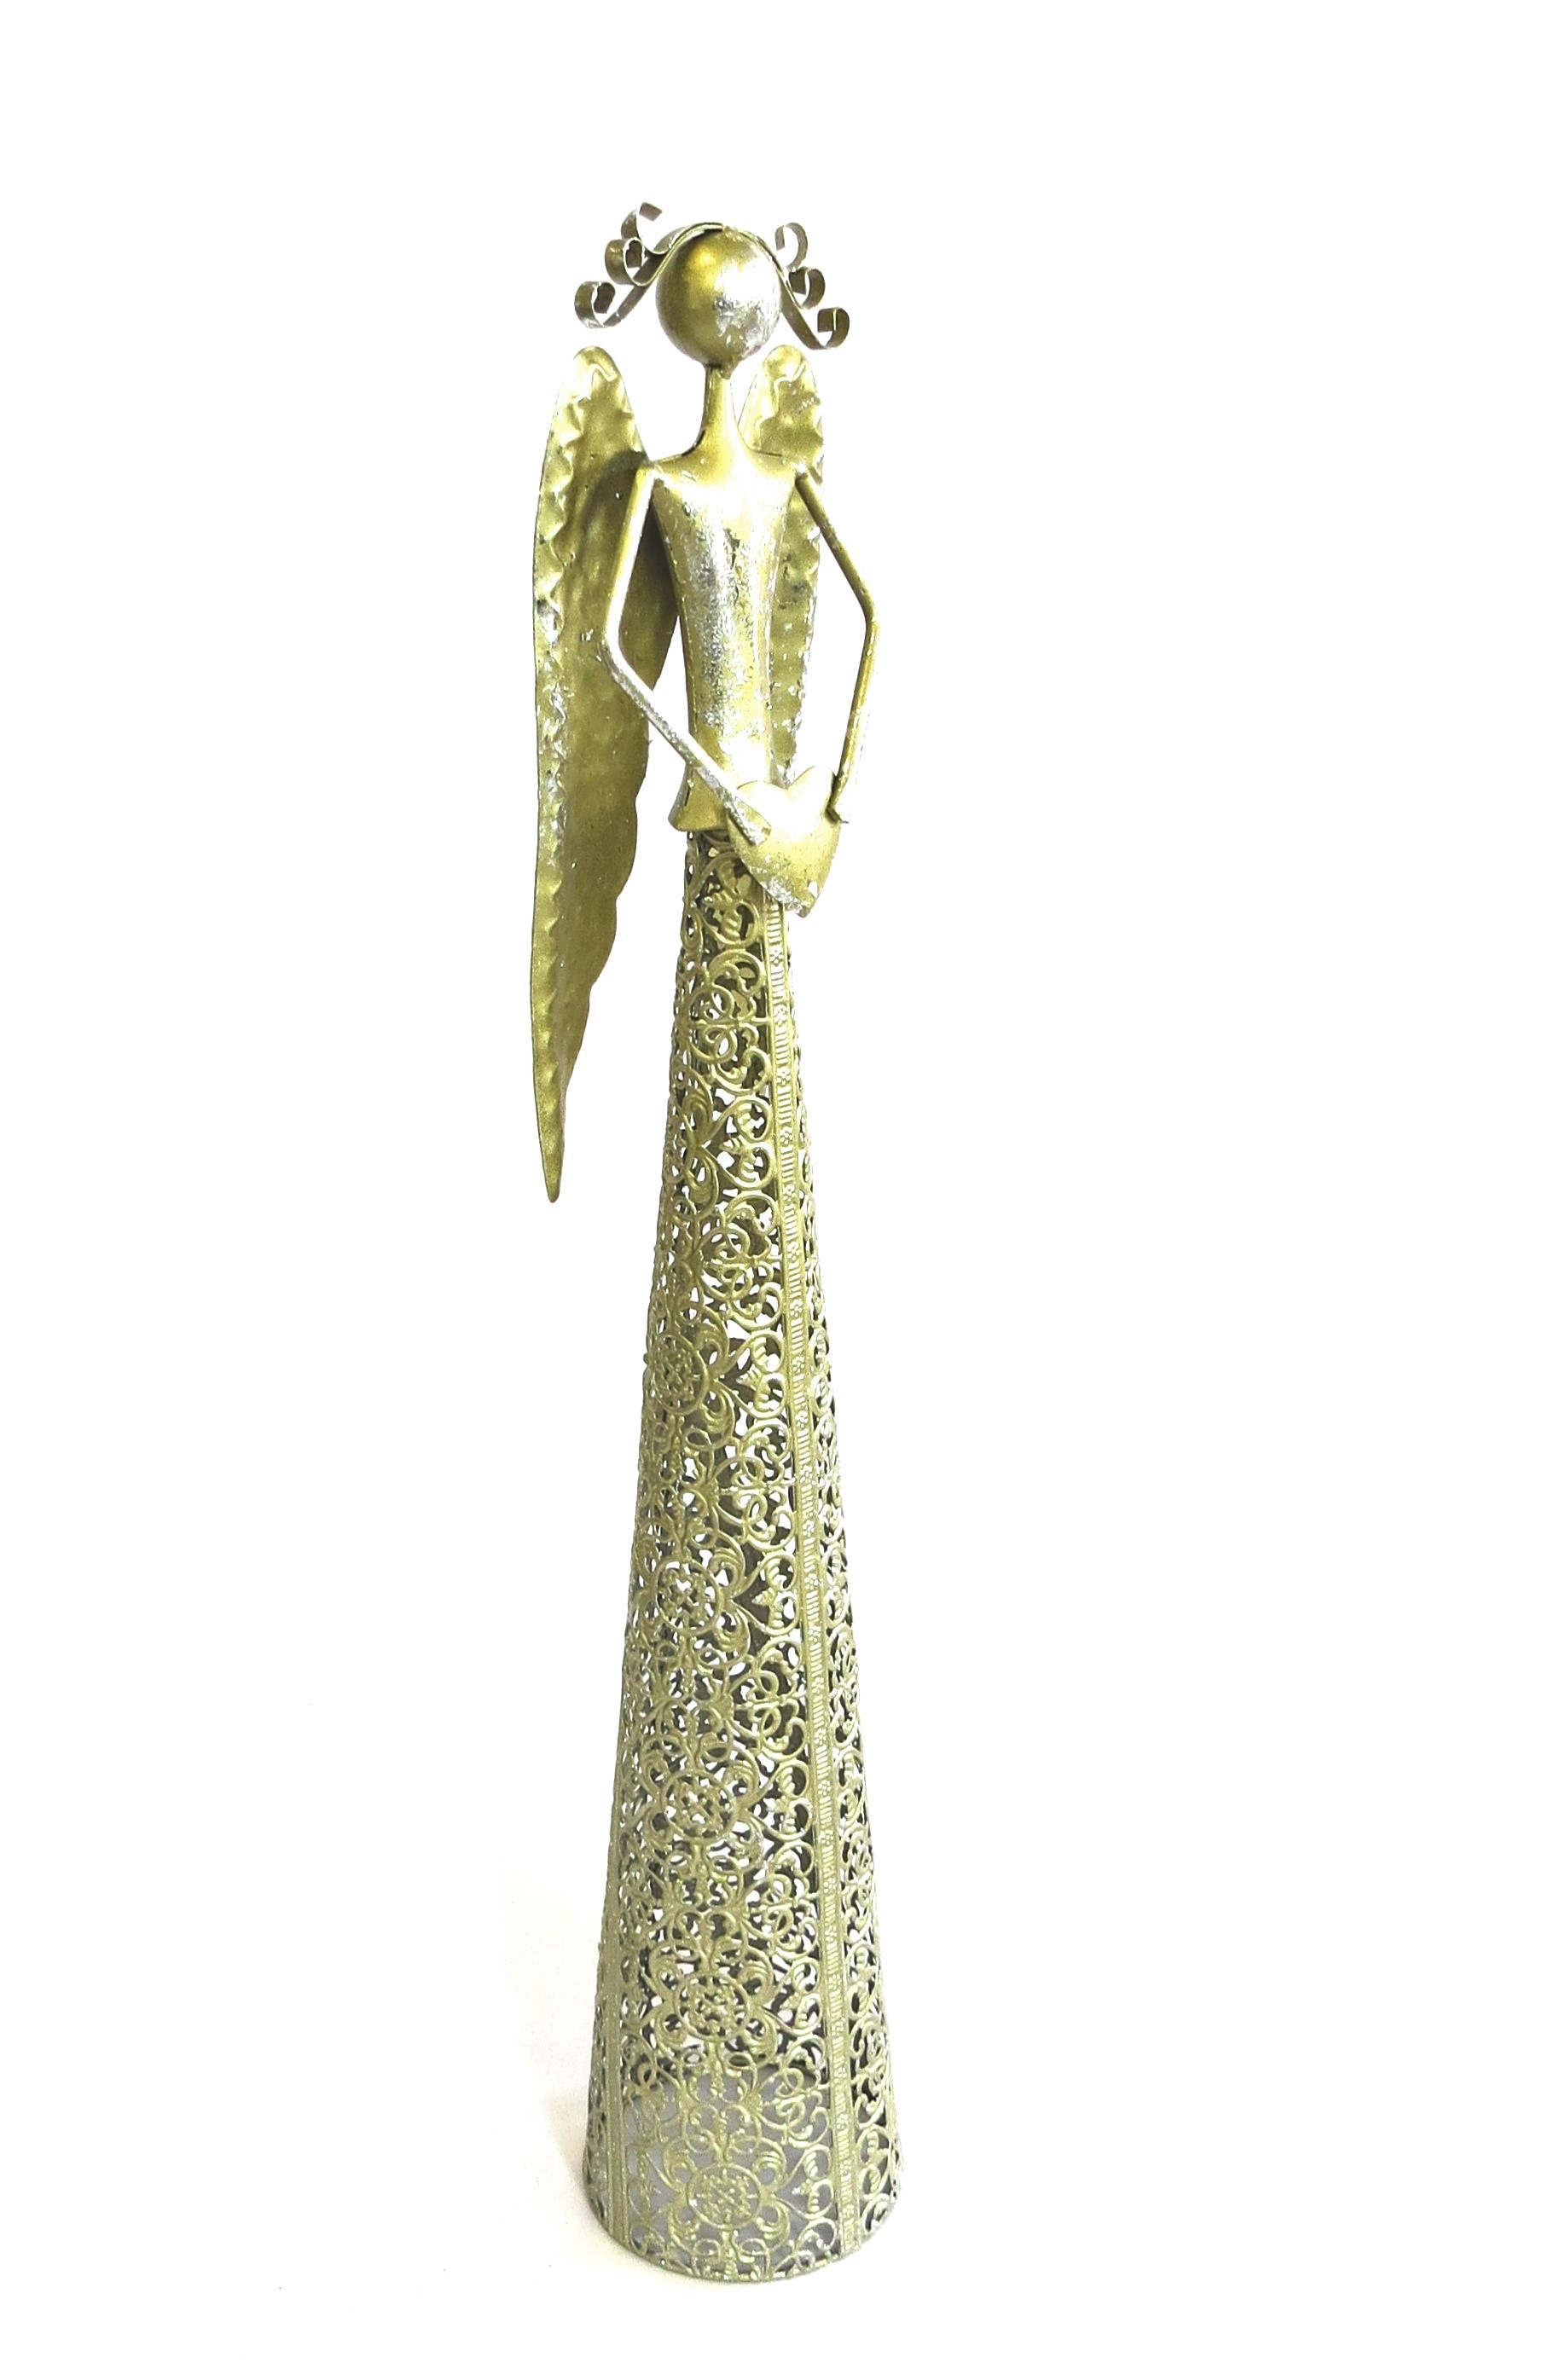 Metall Engel mit Herz Gold XL Weihnachten Deko 56 cm Antik Stil |  Shabbyweiss | Engelfiguren